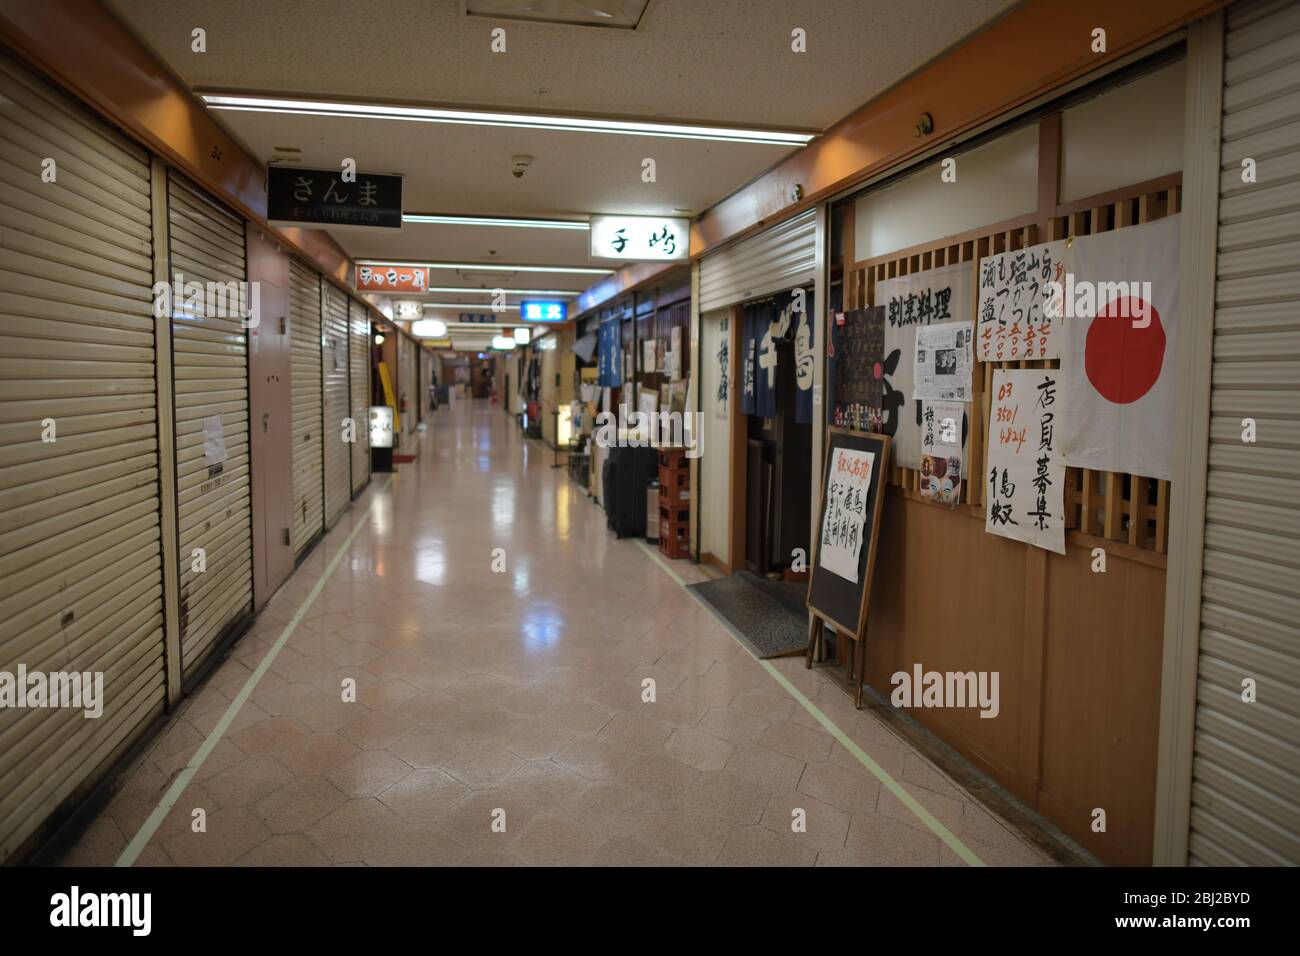 Dienstag. April 2020. TOKIO, JAPAN - APRIL 28: Auf diesem Foto sind Restaurants und Bars zu sehen, die während des COVID-19-Coronavirus-Ausbruchs am Dienstag, den 28. April 2020 in Tokio meist geschlossen sind. Der japanische Premierminister Shinzo Abe hat letzte Woche einen landesweiten Ausnahmezustand ausgerufen, in dem die Menschen aufgefordert werden, zu Hause zu bleiben, um die Ausbreitung des Coronavirus im ganzen Land zu verhindern. (Foto: Richard Atrero de Guzman/AFLO) Quelle: Aflo Co. Ltd./Alamy Live News Stockfoto